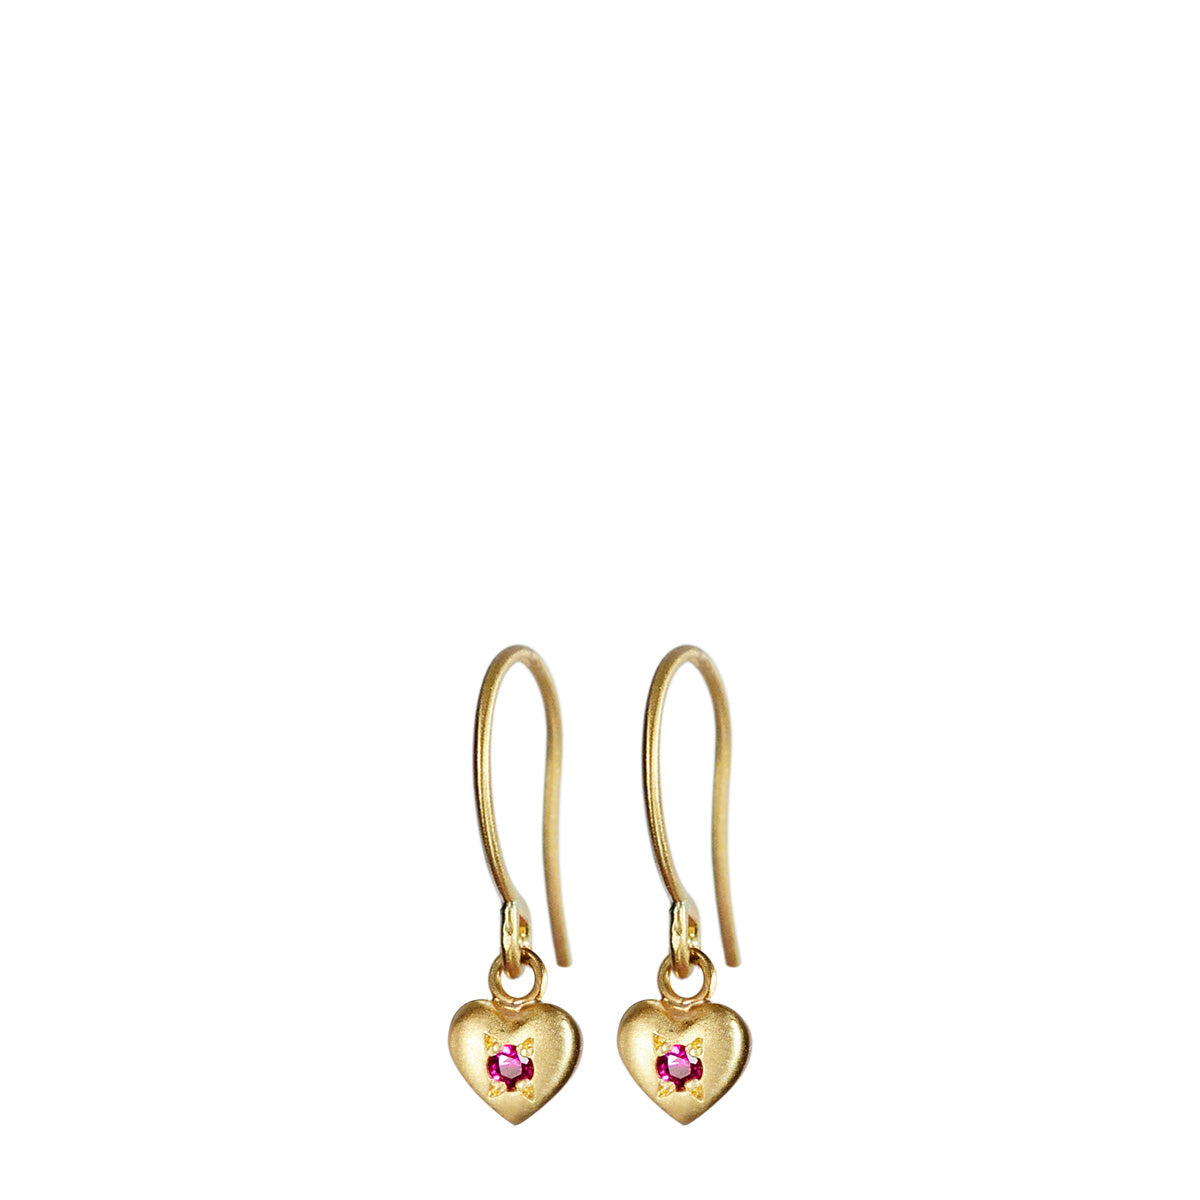 18K Gold Heart Drop Earrings with Rubies